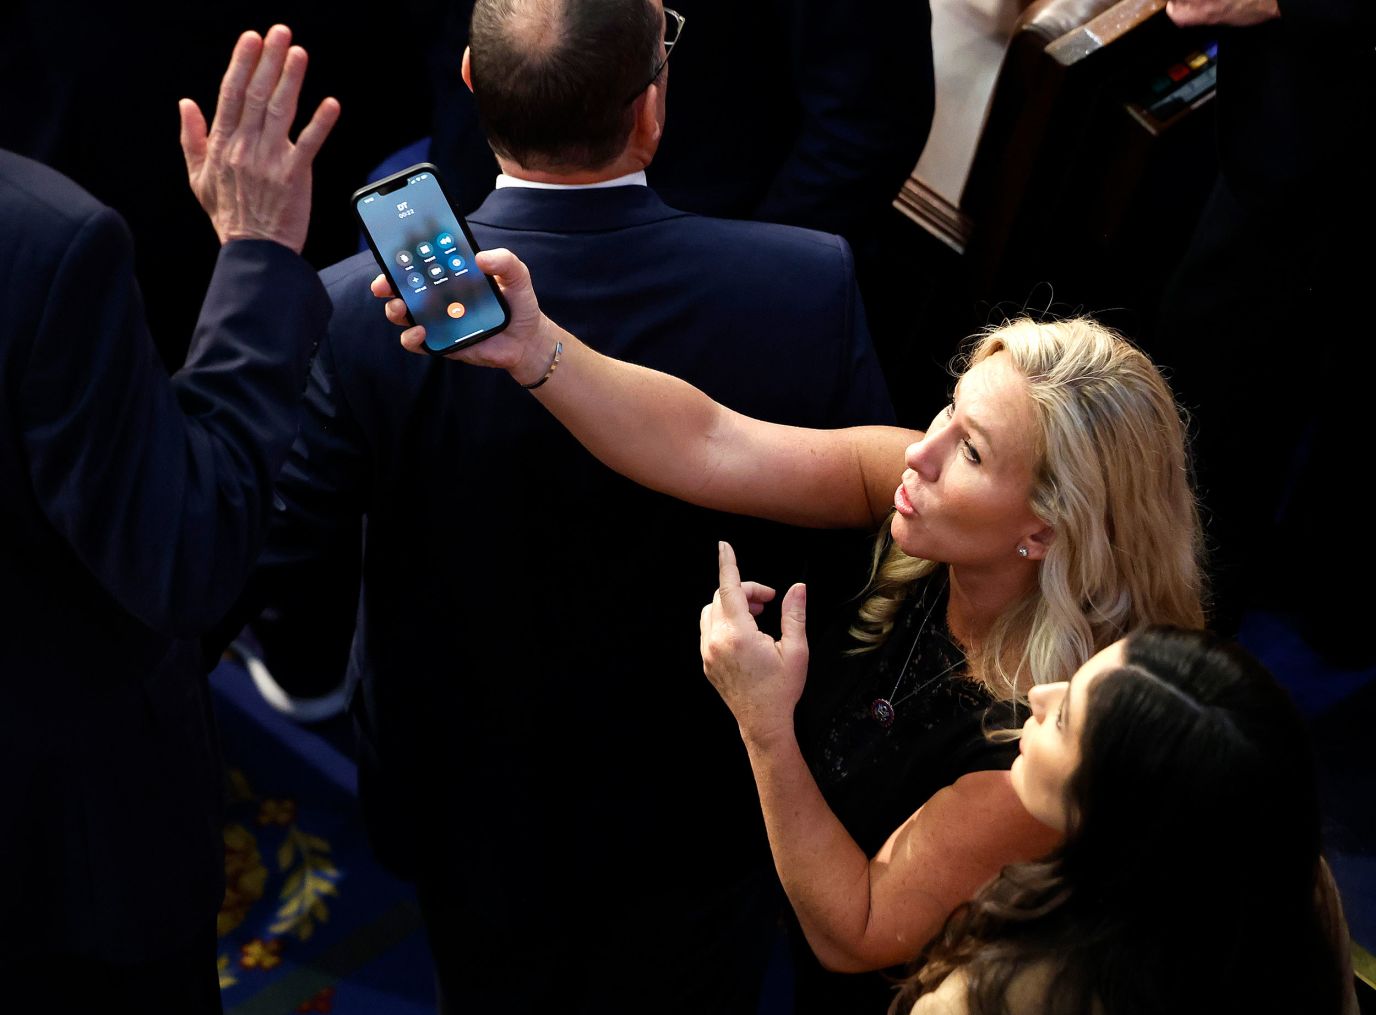 अमेरिकी प्रतिनिधि मार्जोरी टेलर-ग्रीन, जॉर्जिया के एक रिपब्लिकन, के पास आद्याक्षर वाला फोन है "डीटी" शुक्रवार की रात स्क्रीन पर।  उनके प्रवक्ता ने पुष्टि की कि यह फोन पर पूर्व राष्ट्रपति डोनाल्ड ट्रम्प थे।